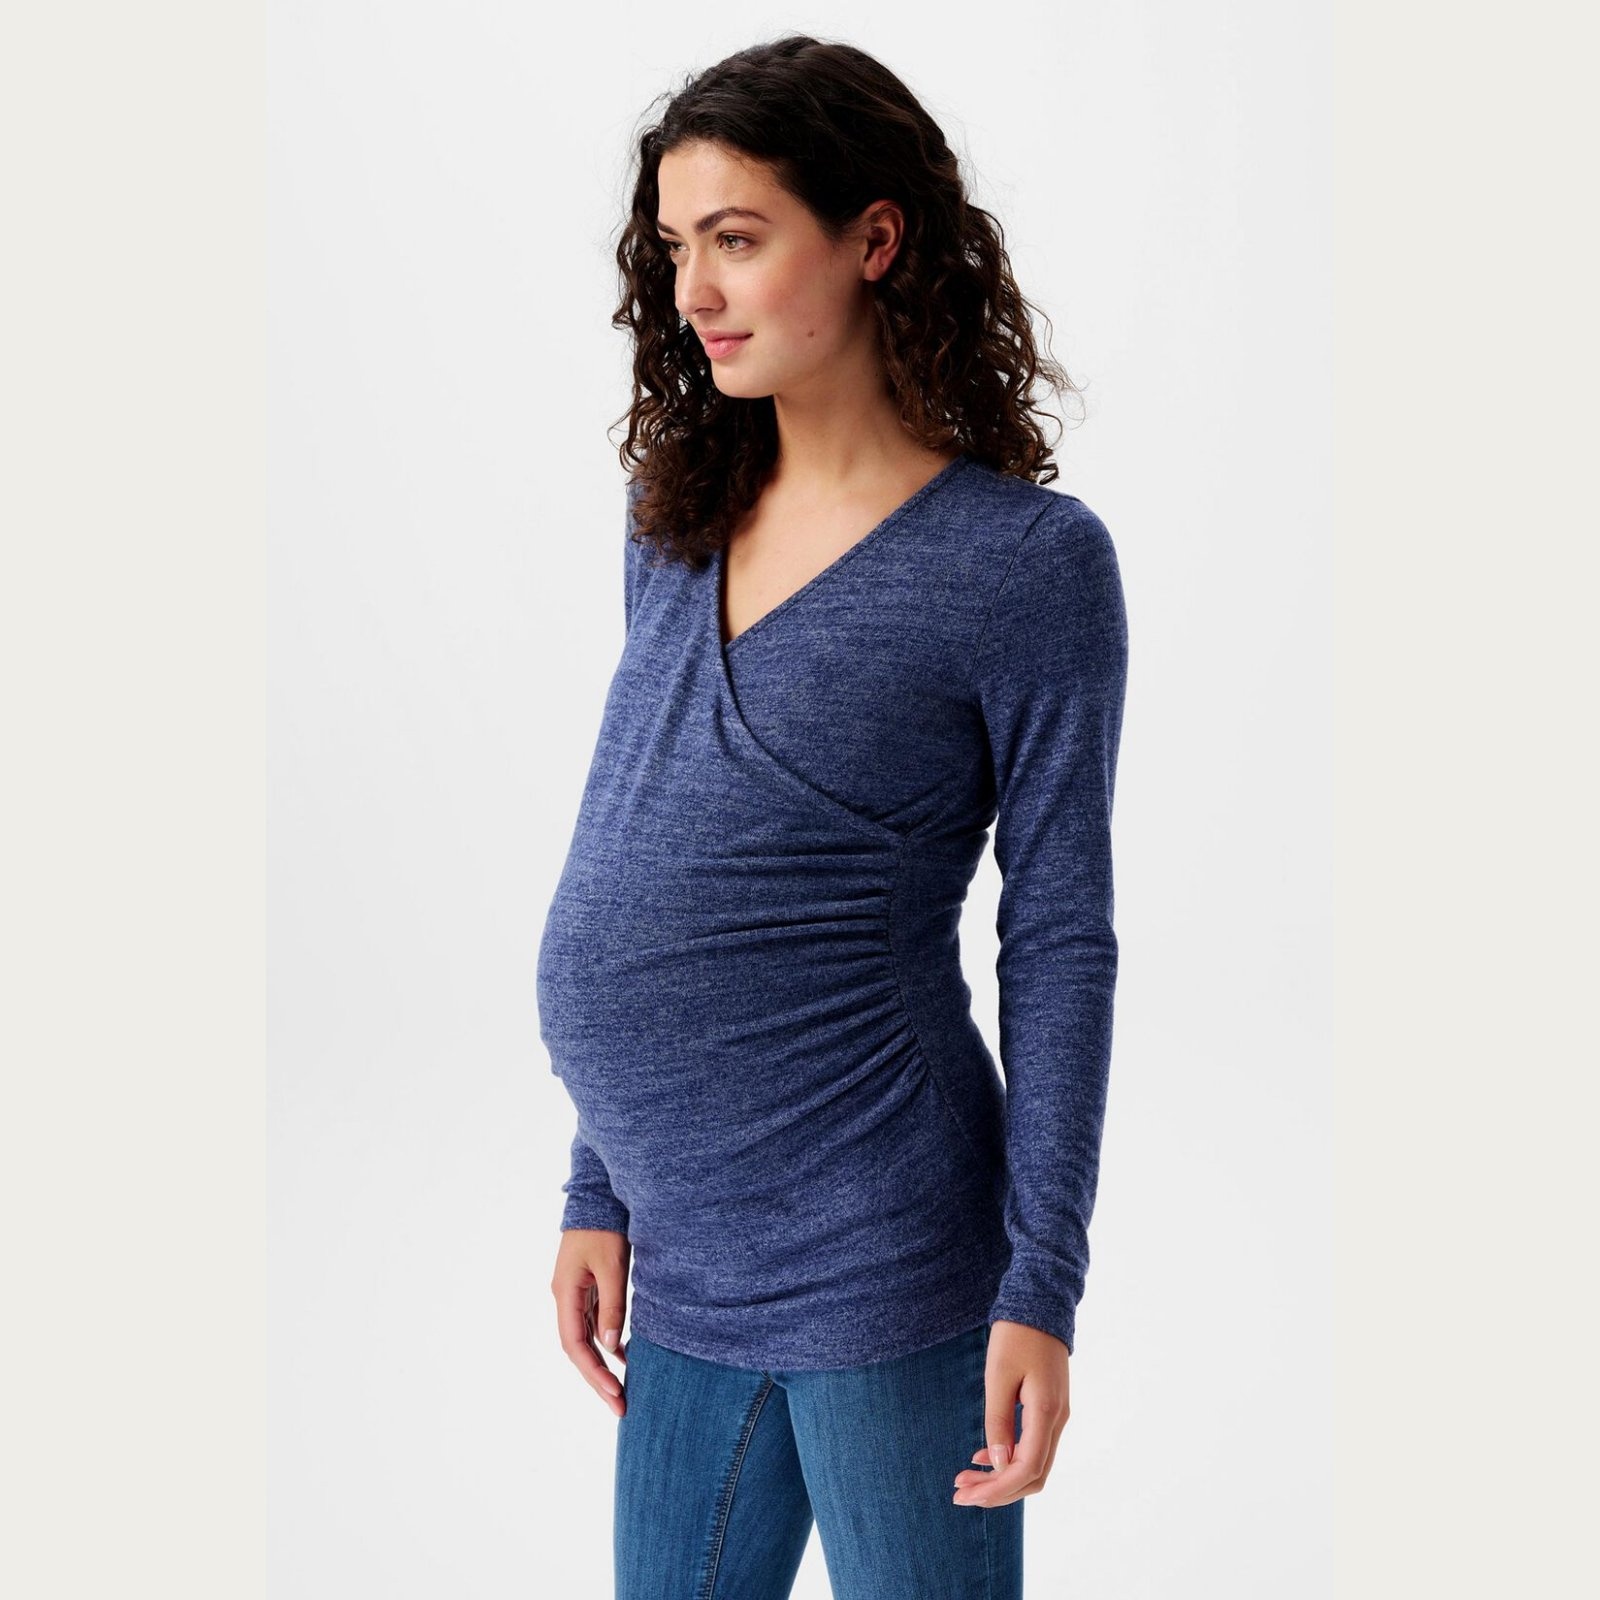 Zwangerschapsjurk Voedingsshirt Cross Over Blauw